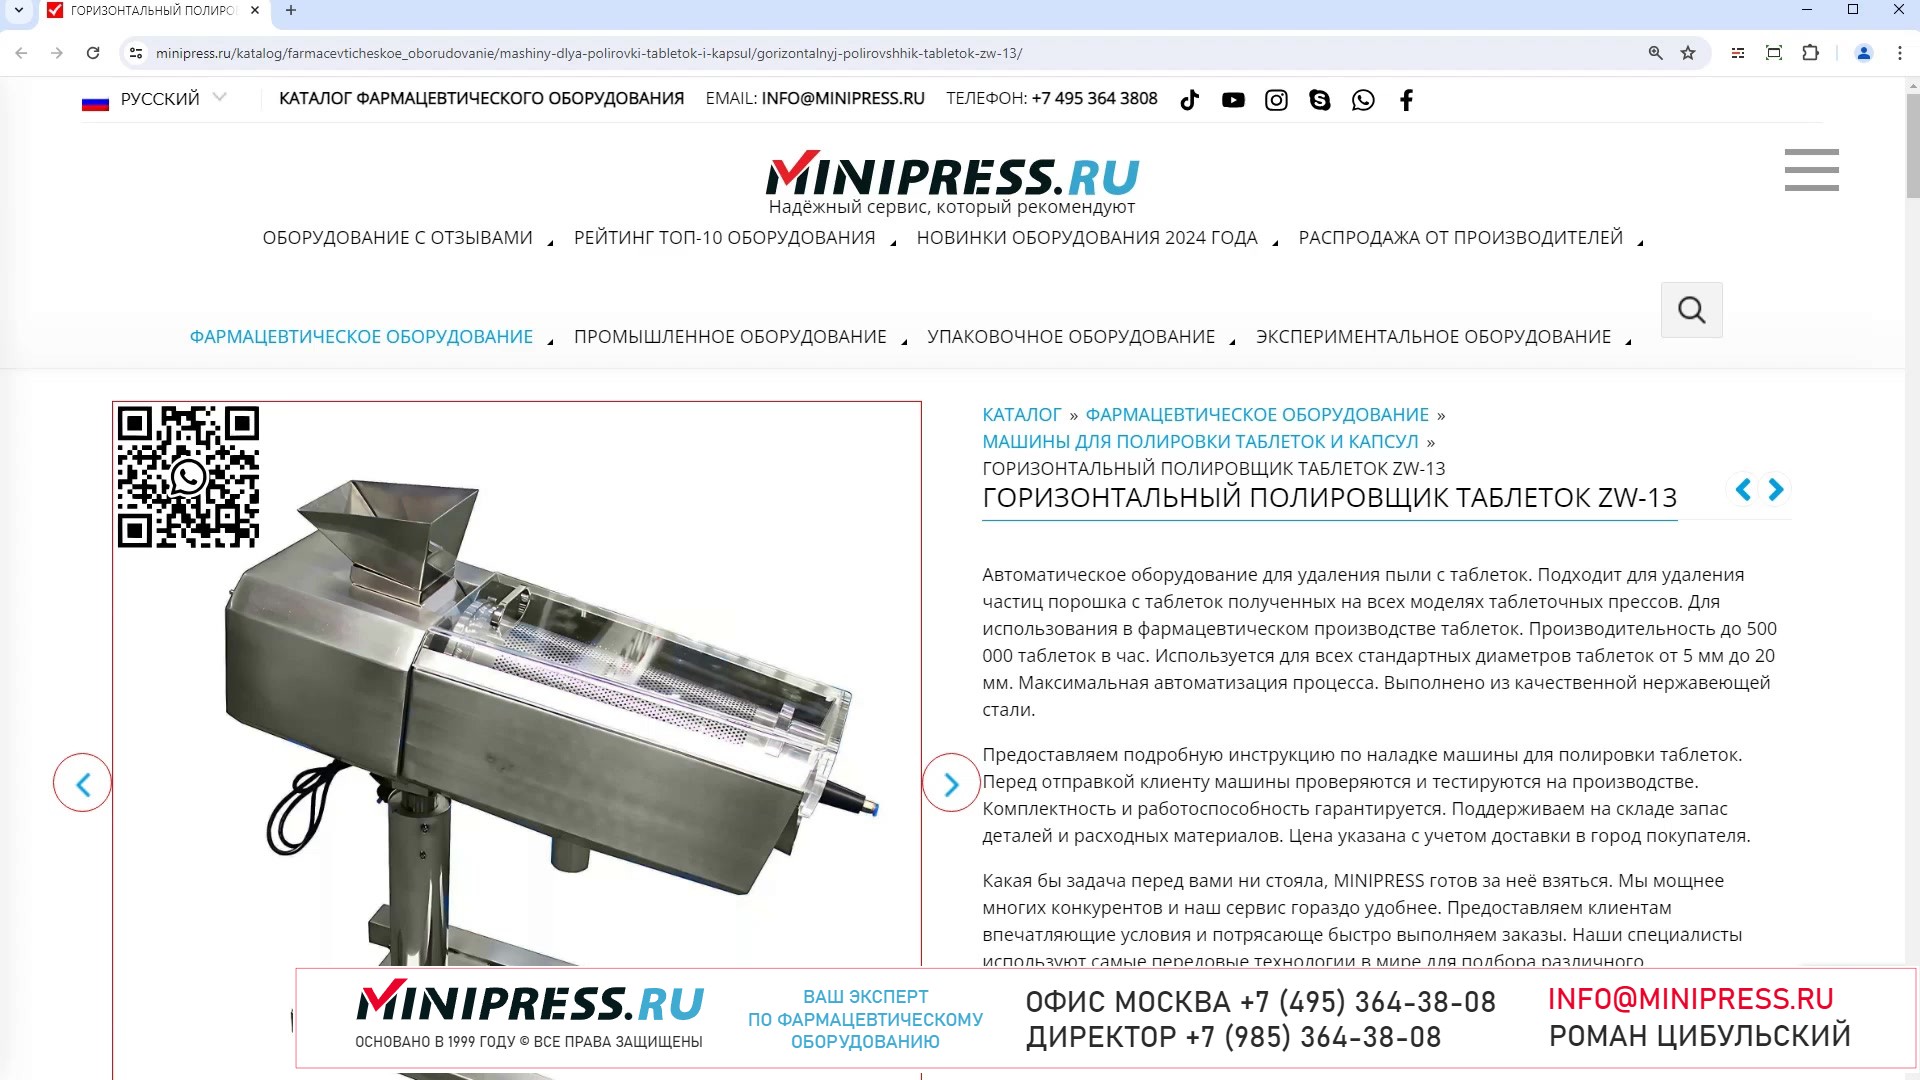 Minipress.ru Горизонтальный полировщик таблеток ZW-13